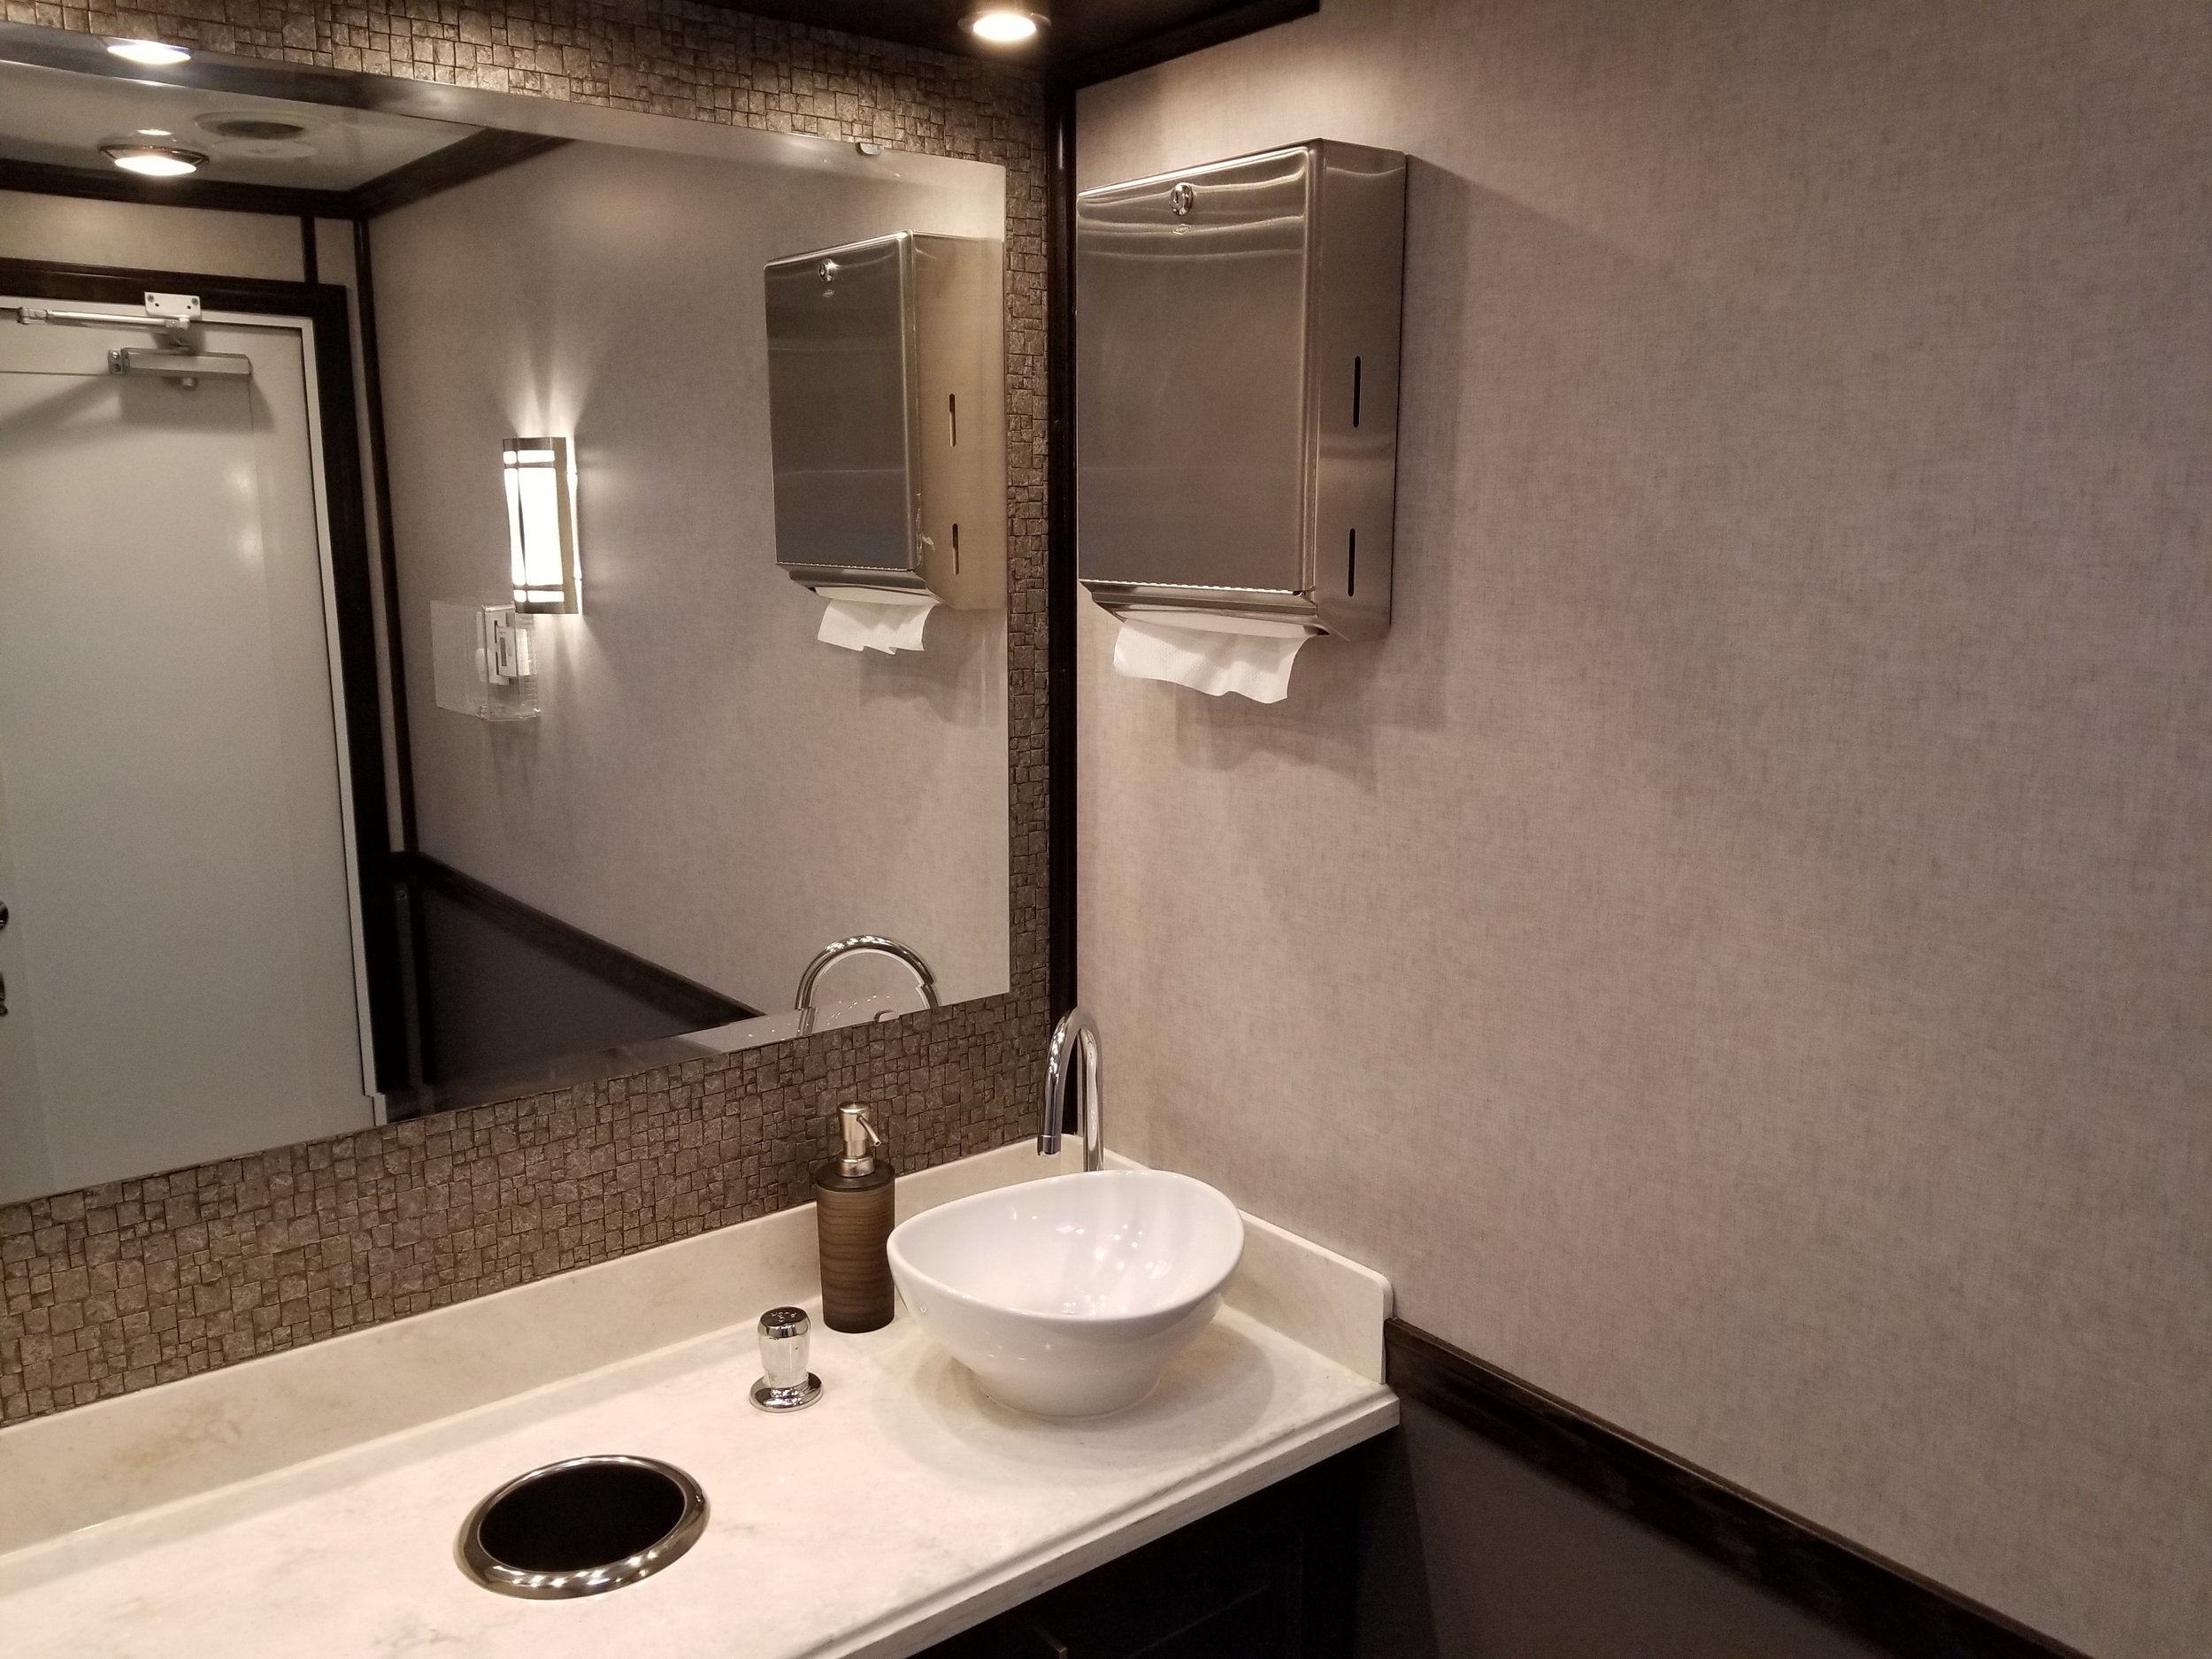 2 person restroom trailer interior